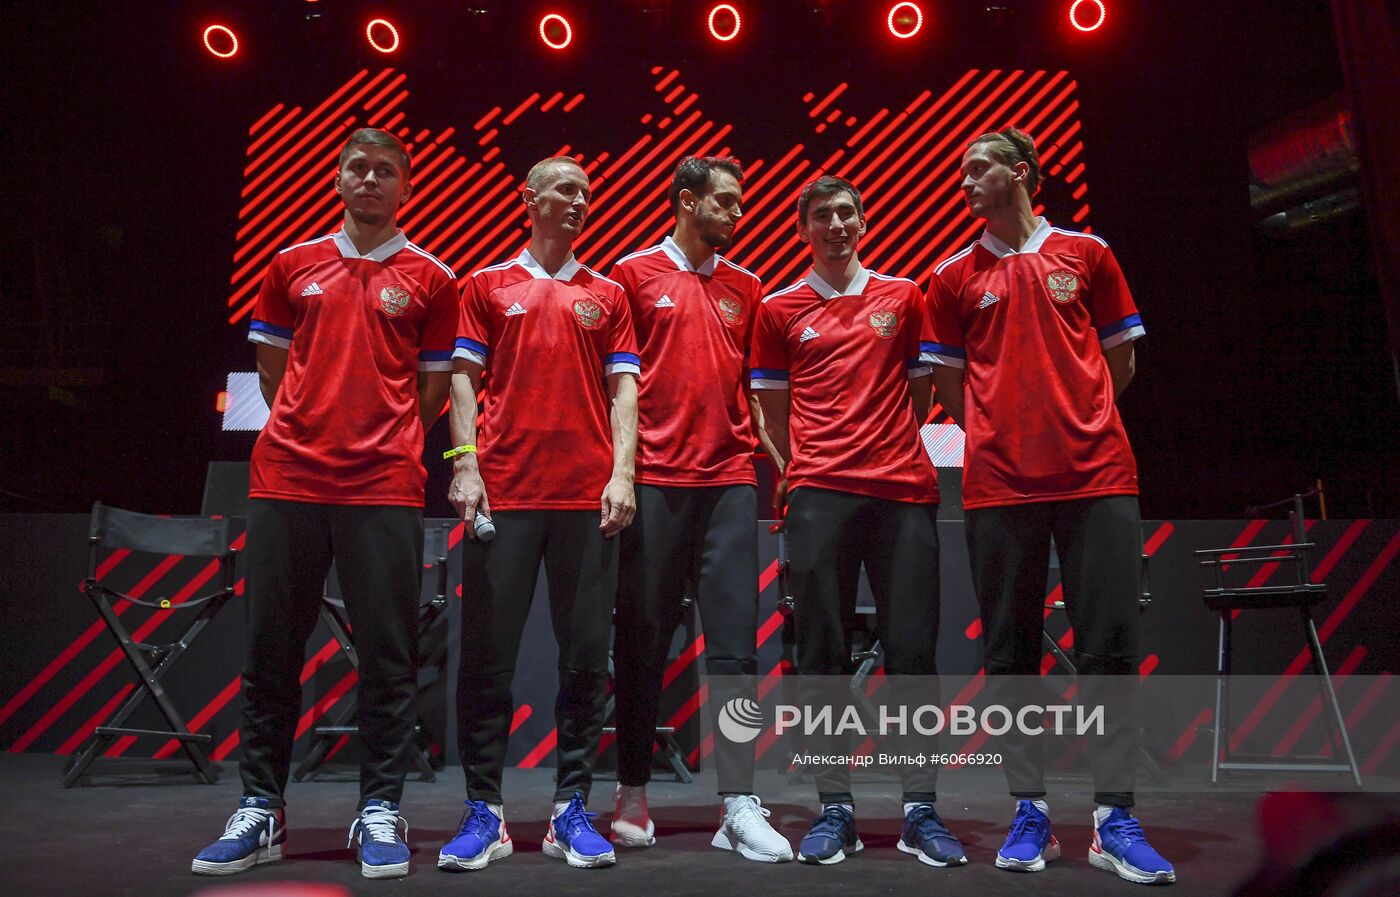 Представление формы сборной России к ЧЕ-2020 по футболу